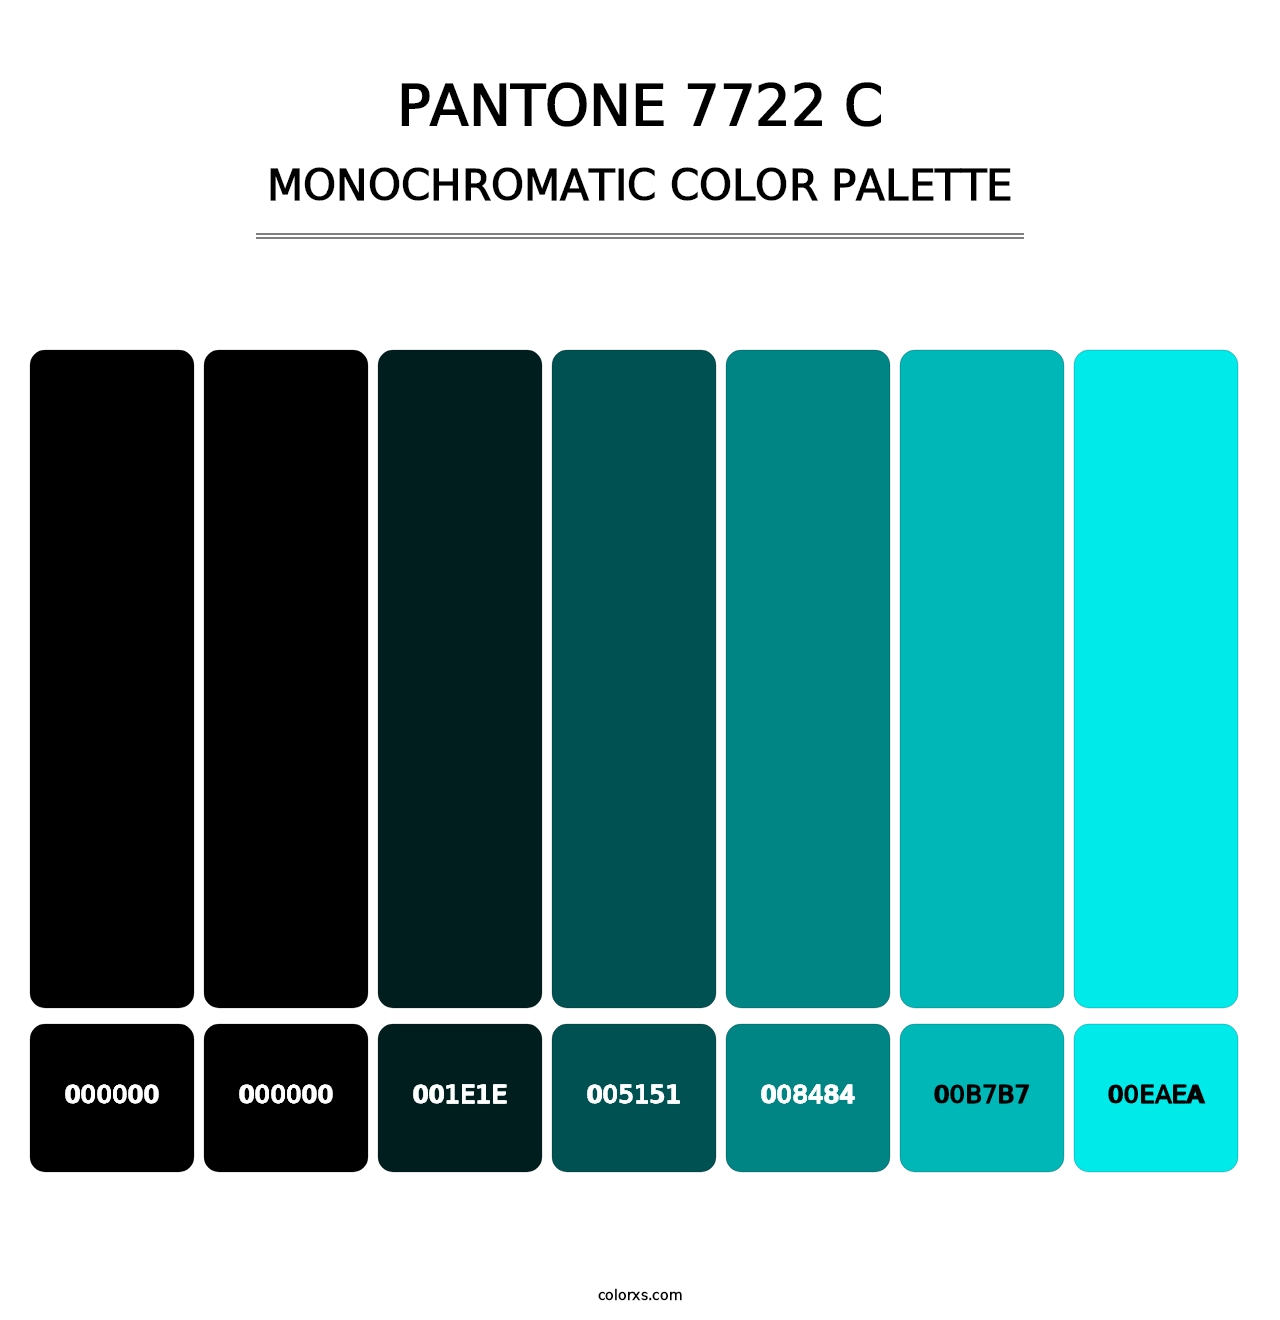 PANTONE 7722 C - Monochromatic Color Palette